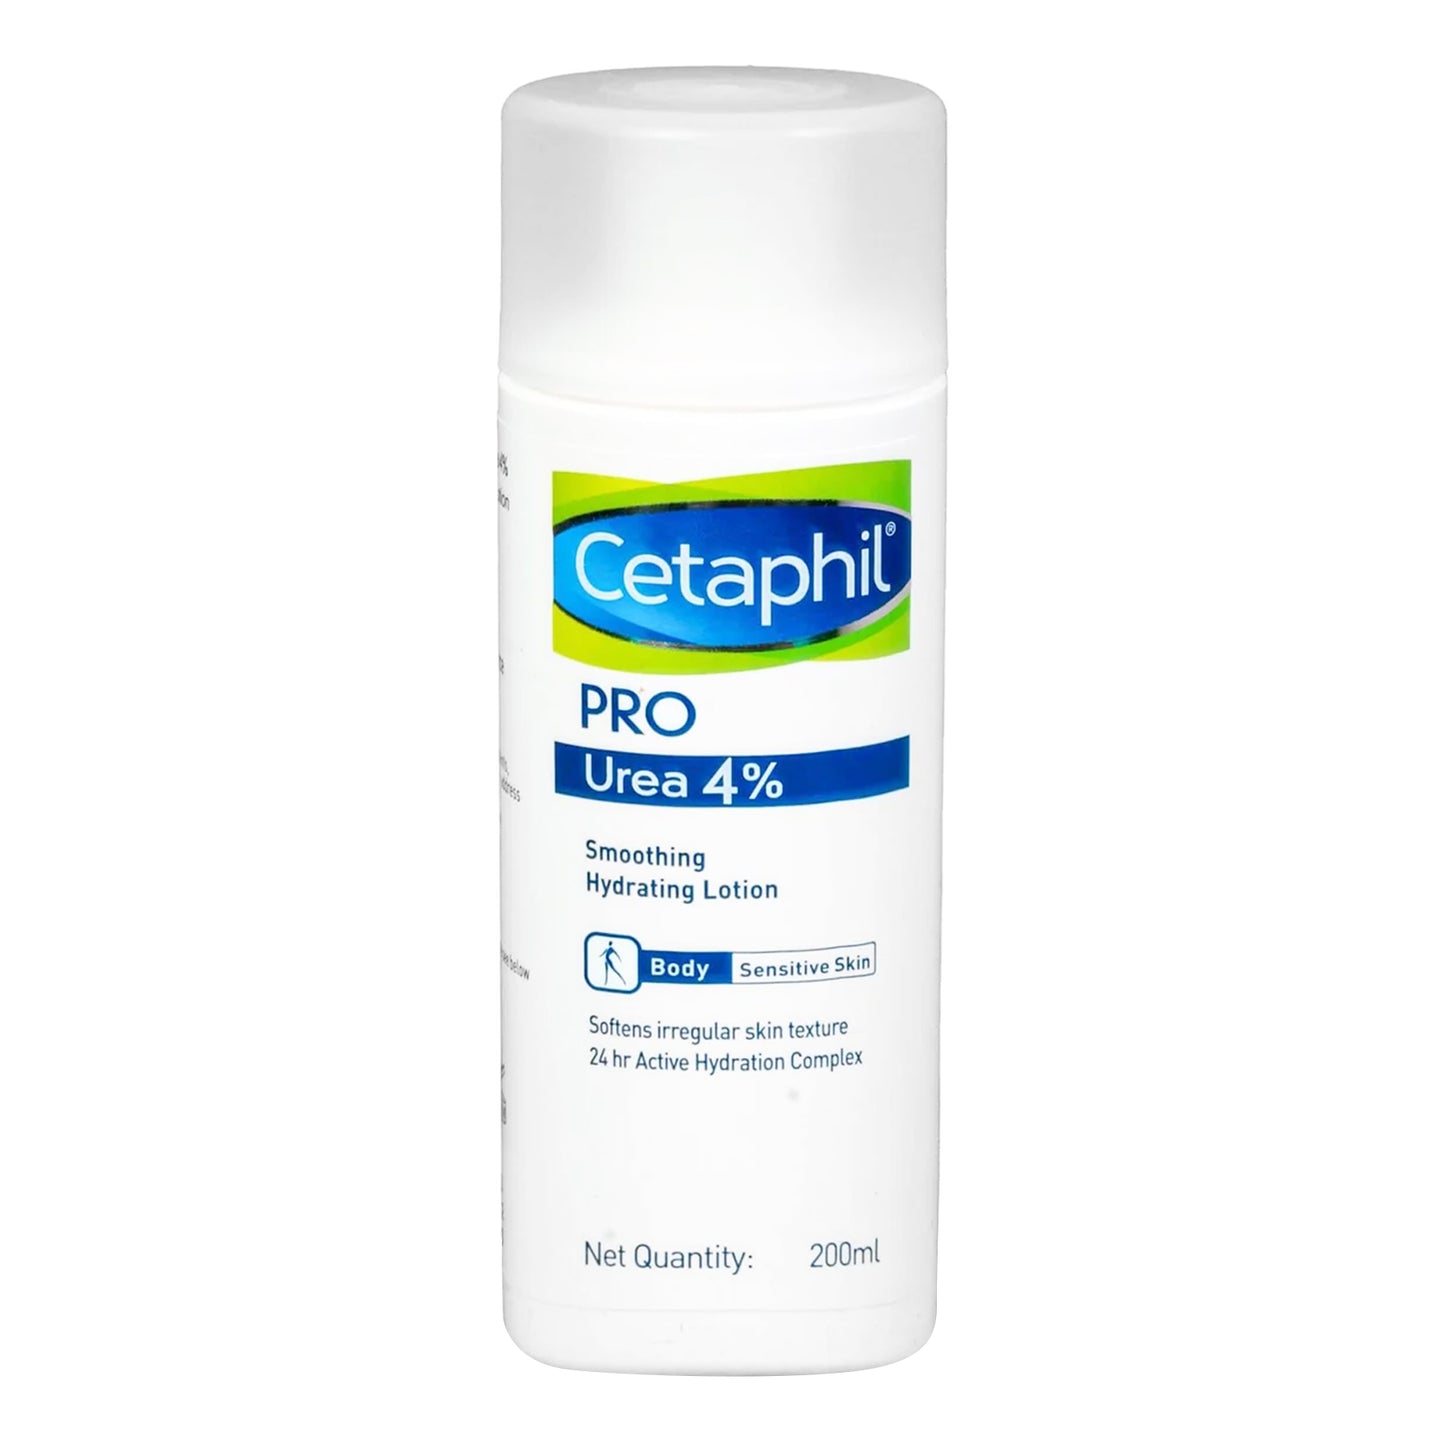 Cetaphil Pro Urea 4% Smoothing Hydrating Lotion, 200ml